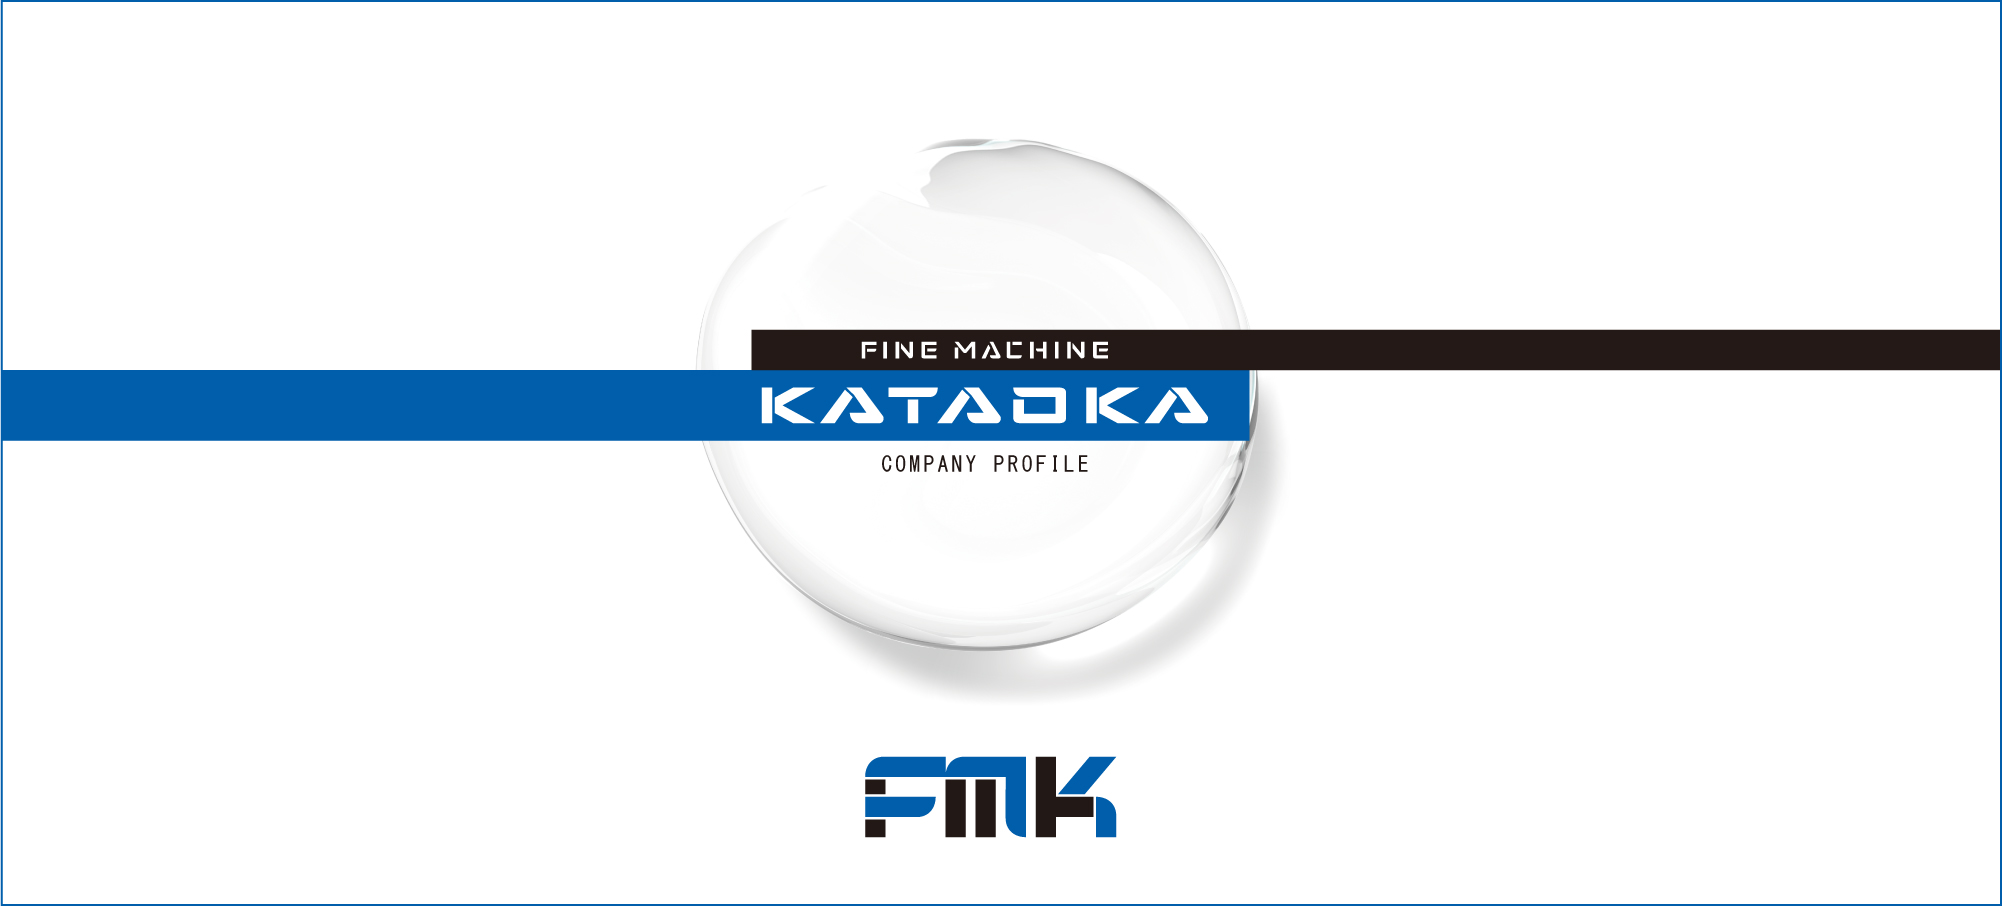 Fine Machine Kataoka Corporation image